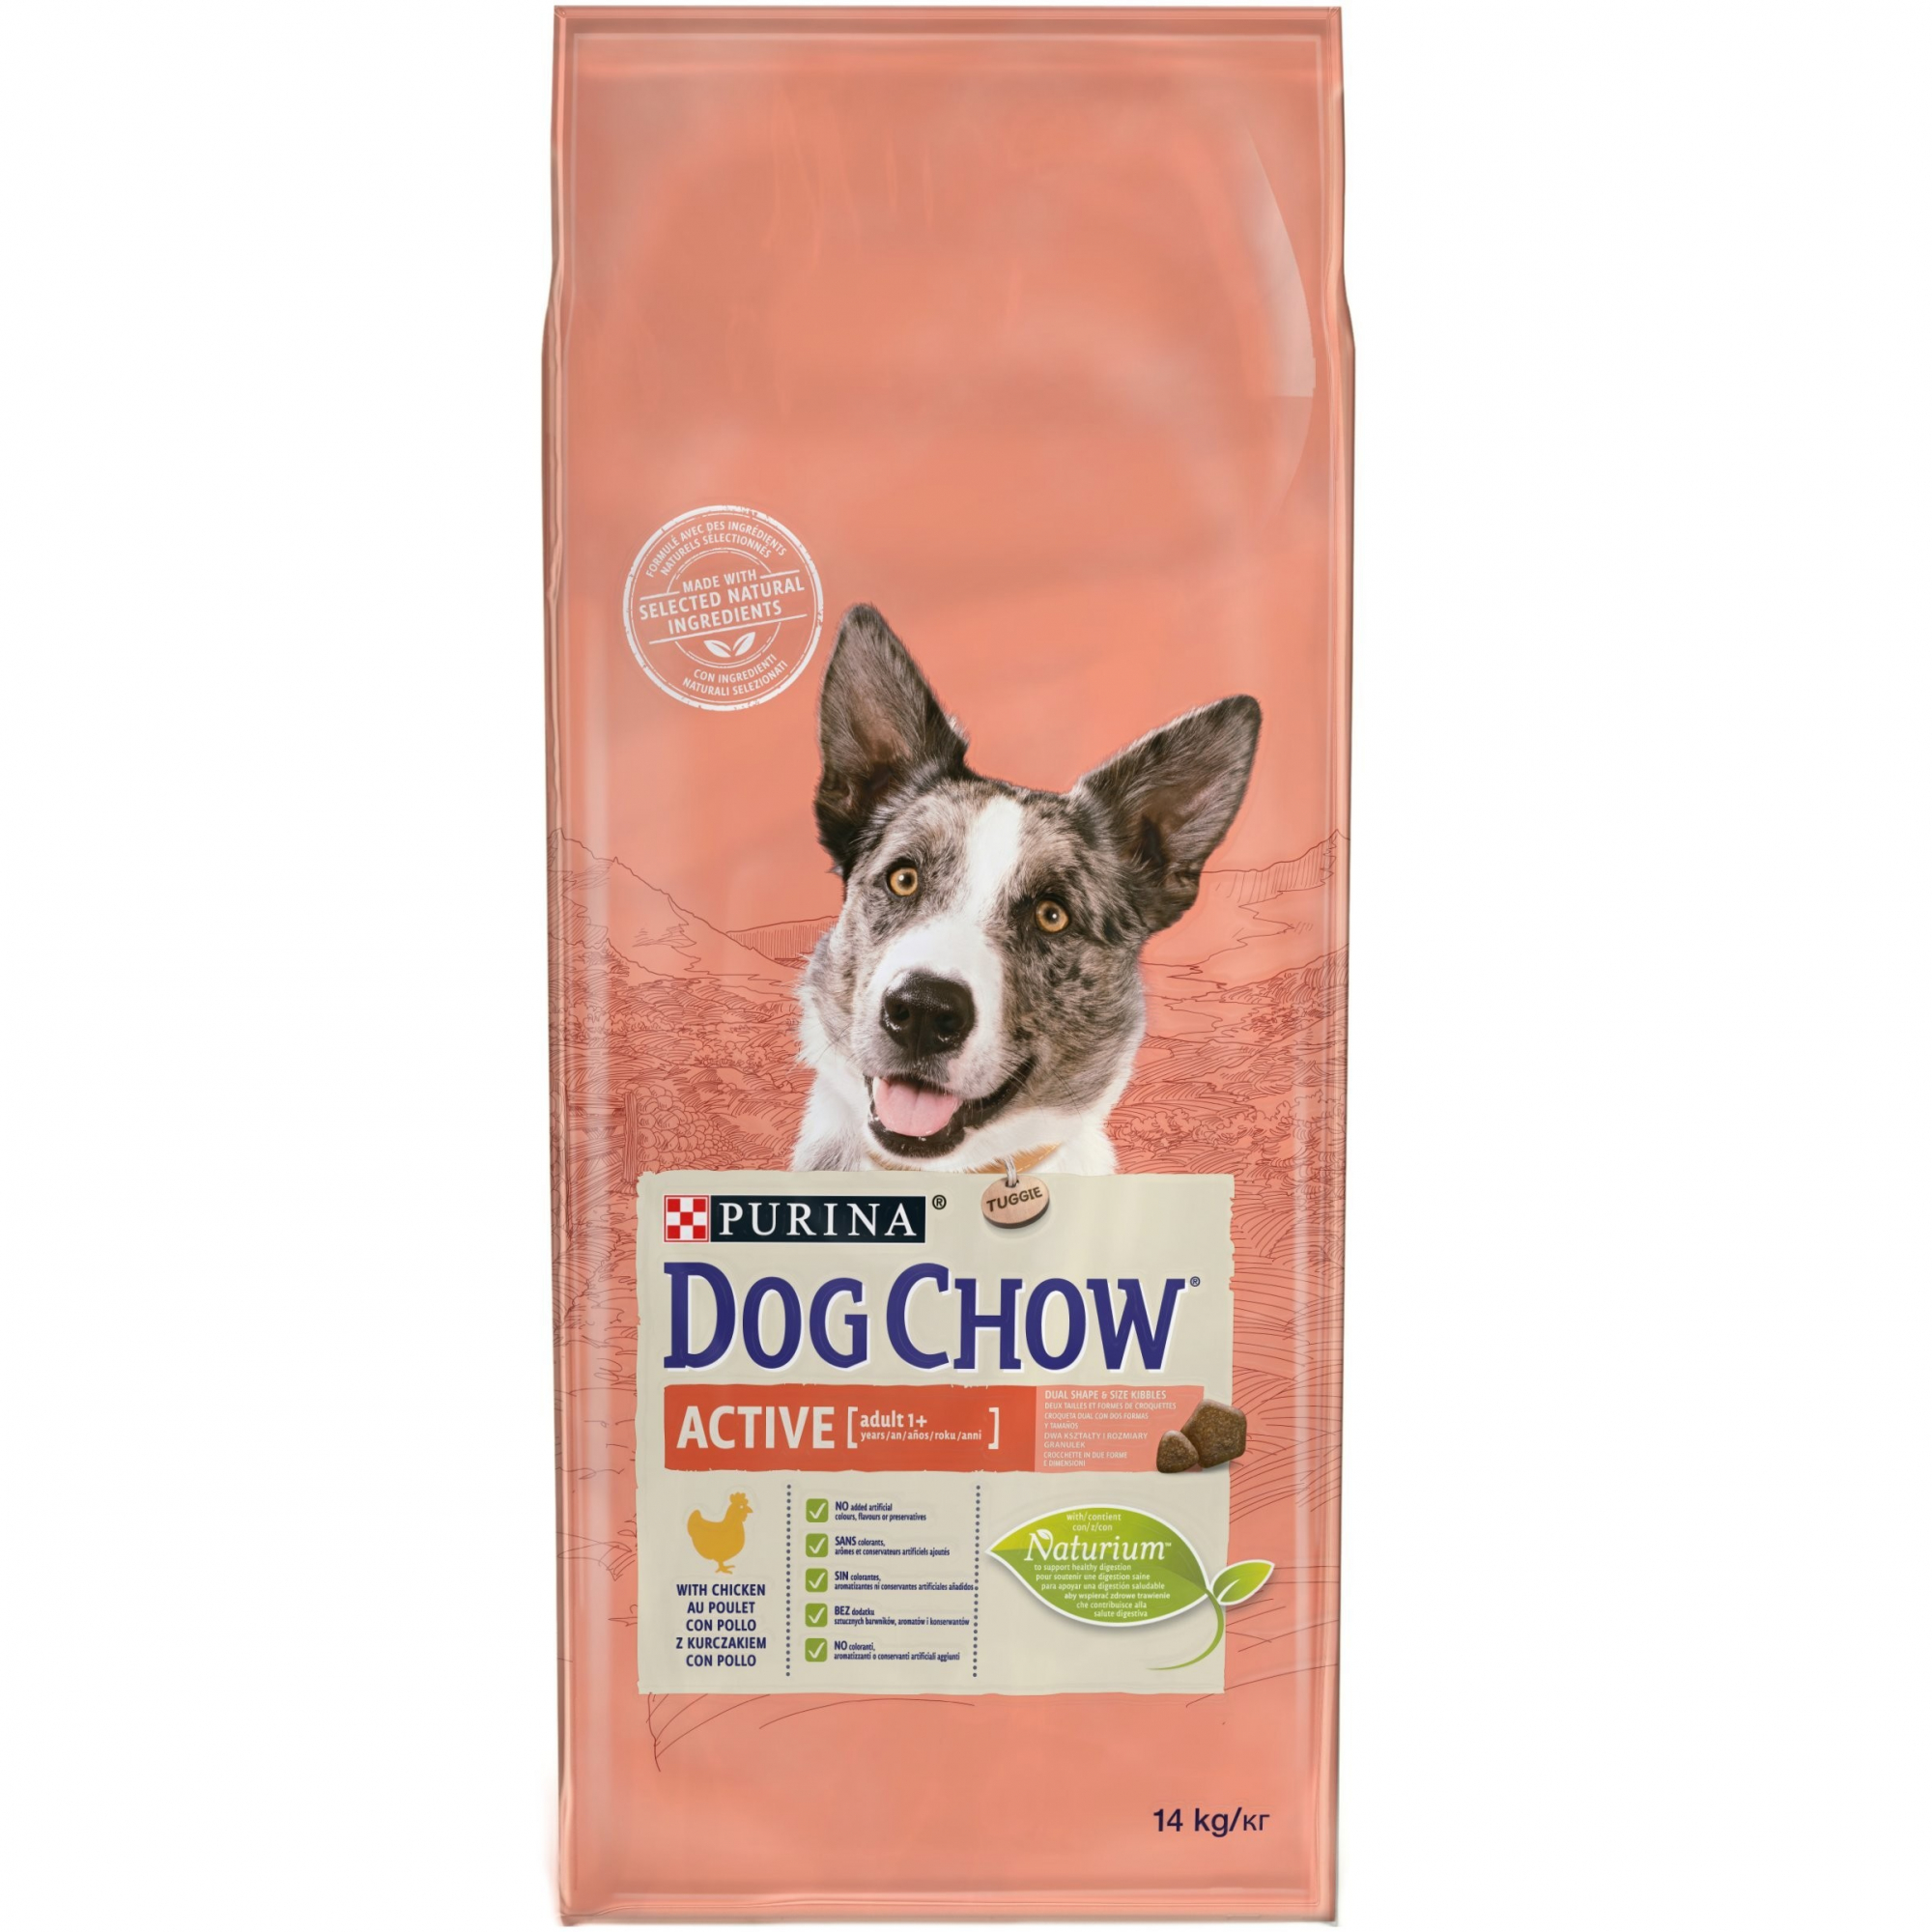 DOG CHOW Active au Poulet pour Chien 